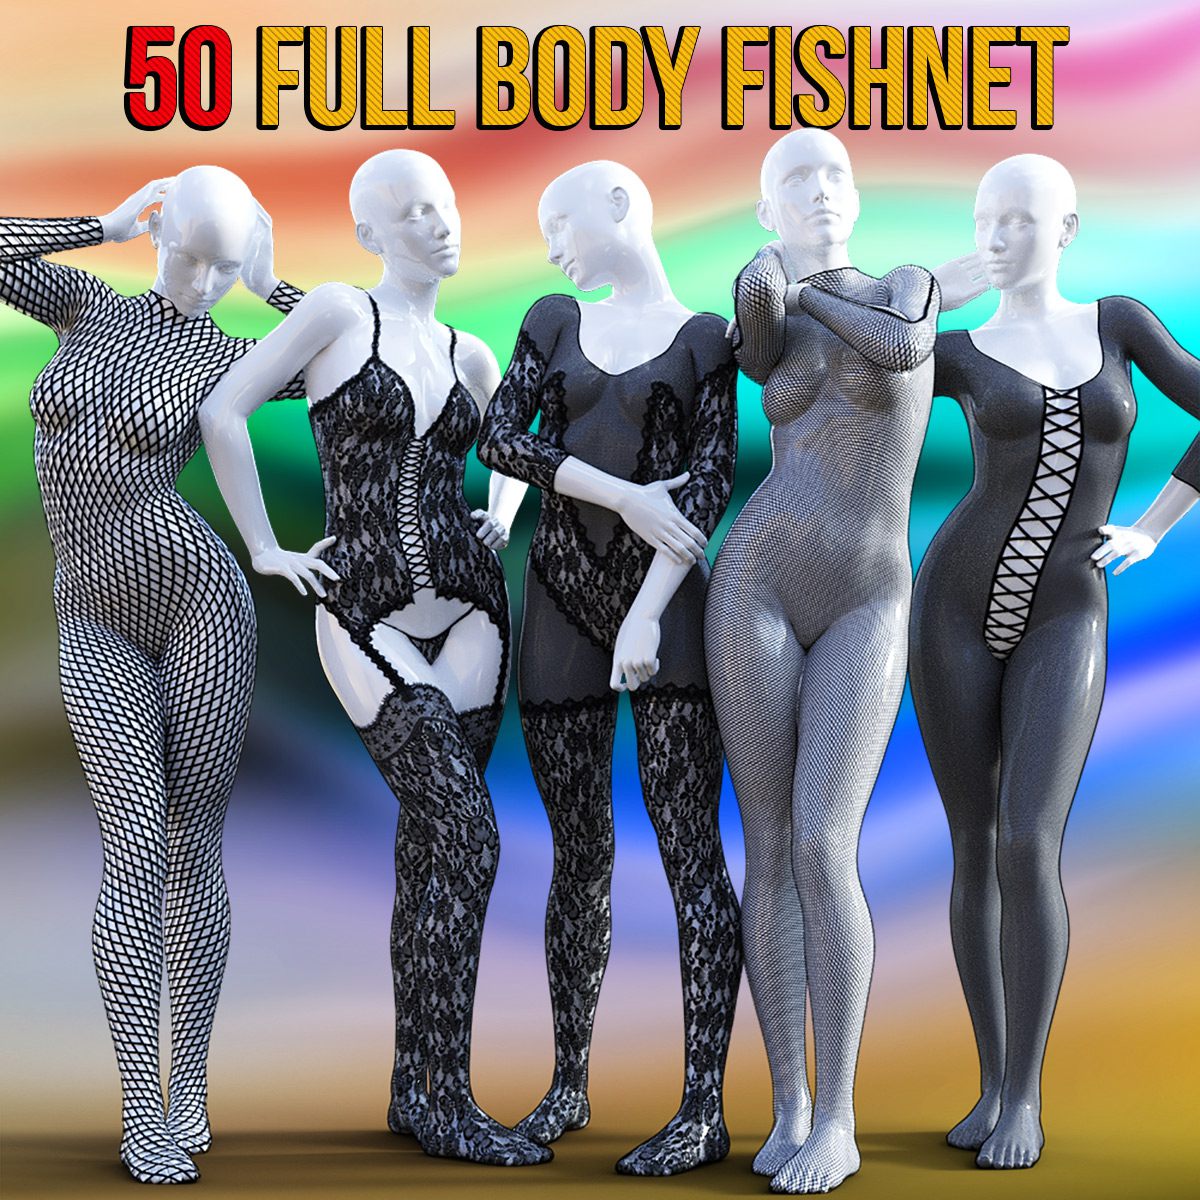 50 Full Body Fishnet for G8F_DAZ3D下载站